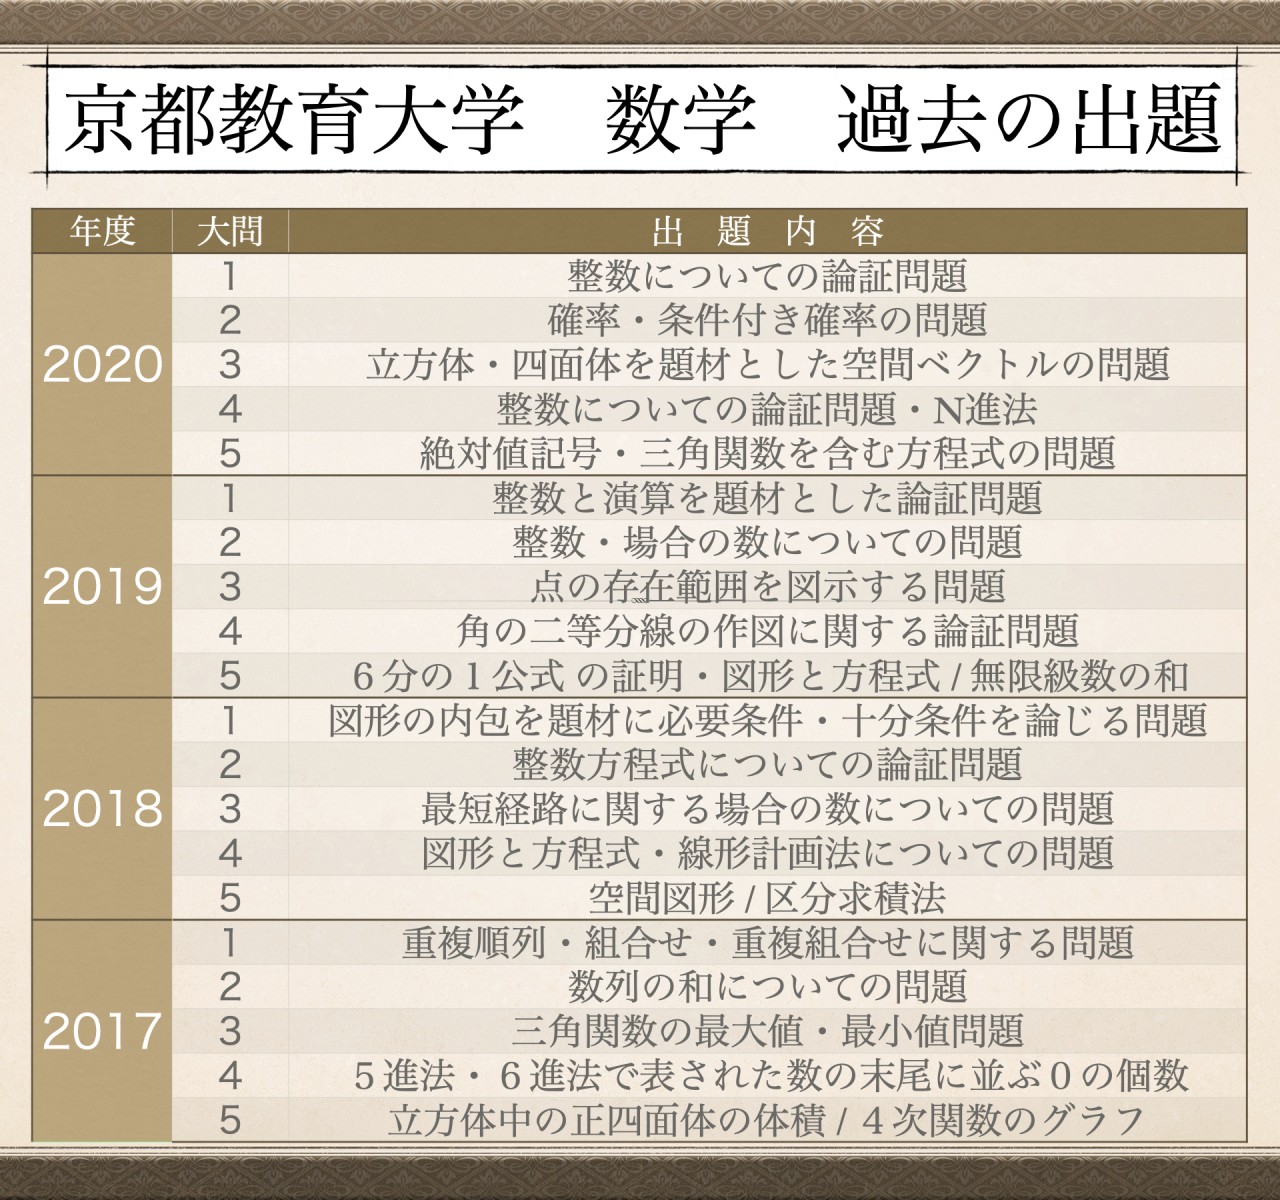 京都 教育 大学 合格 発表